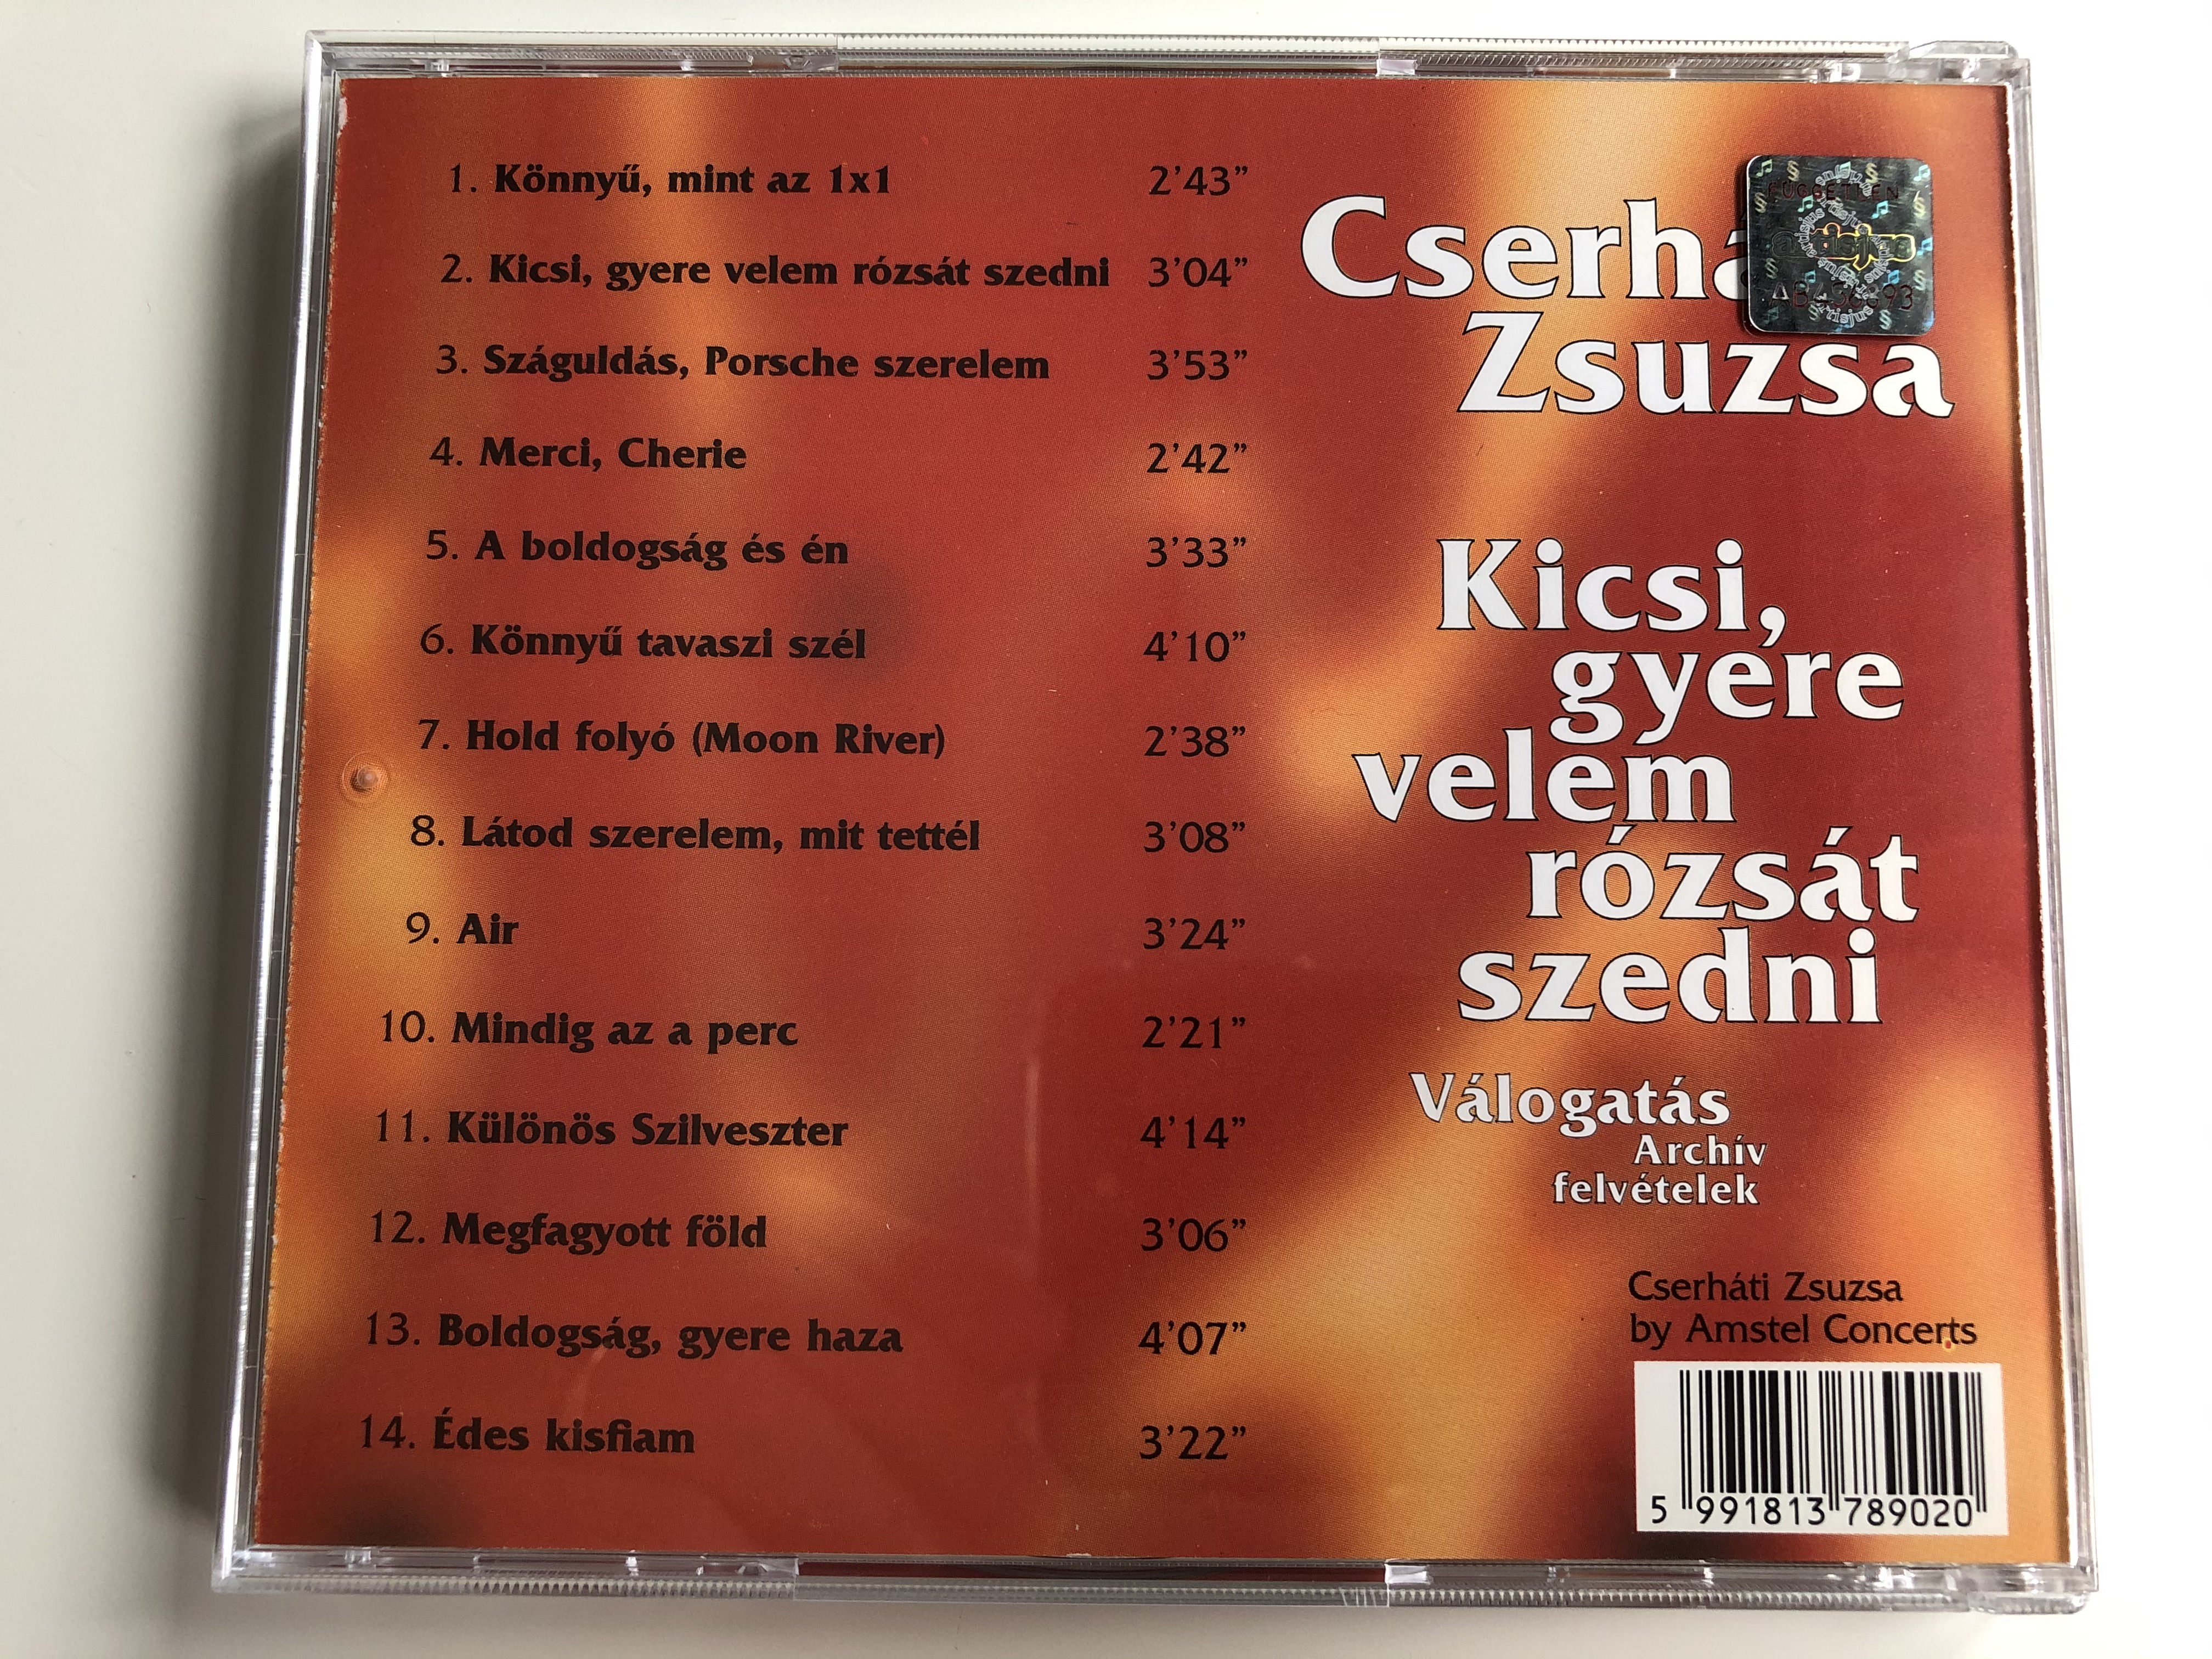 cserh-ti-zsuzsa-kicsi-gyere-velem-r-zs-t-szedni-valogatas-archiv-felvetelek-gong-audio-cd-1997-hcd-37890-5-.jpg